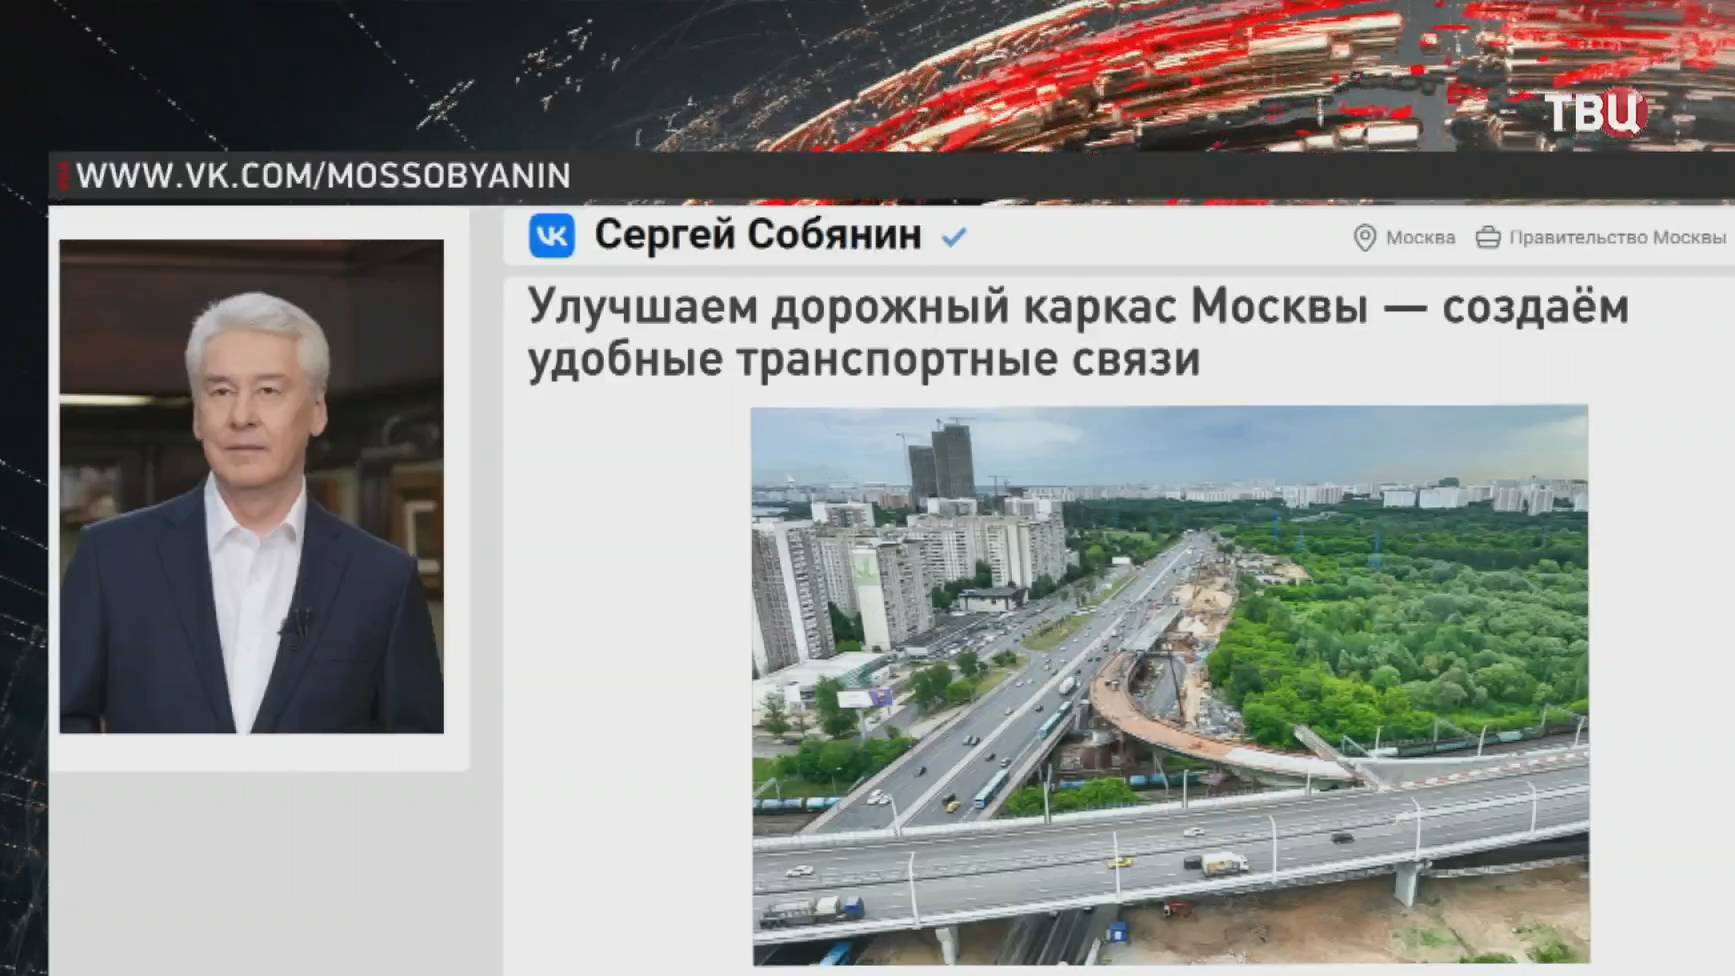 Собянин: В Москве продолжается улучшение дорожного каркаса / События на ТВЦ